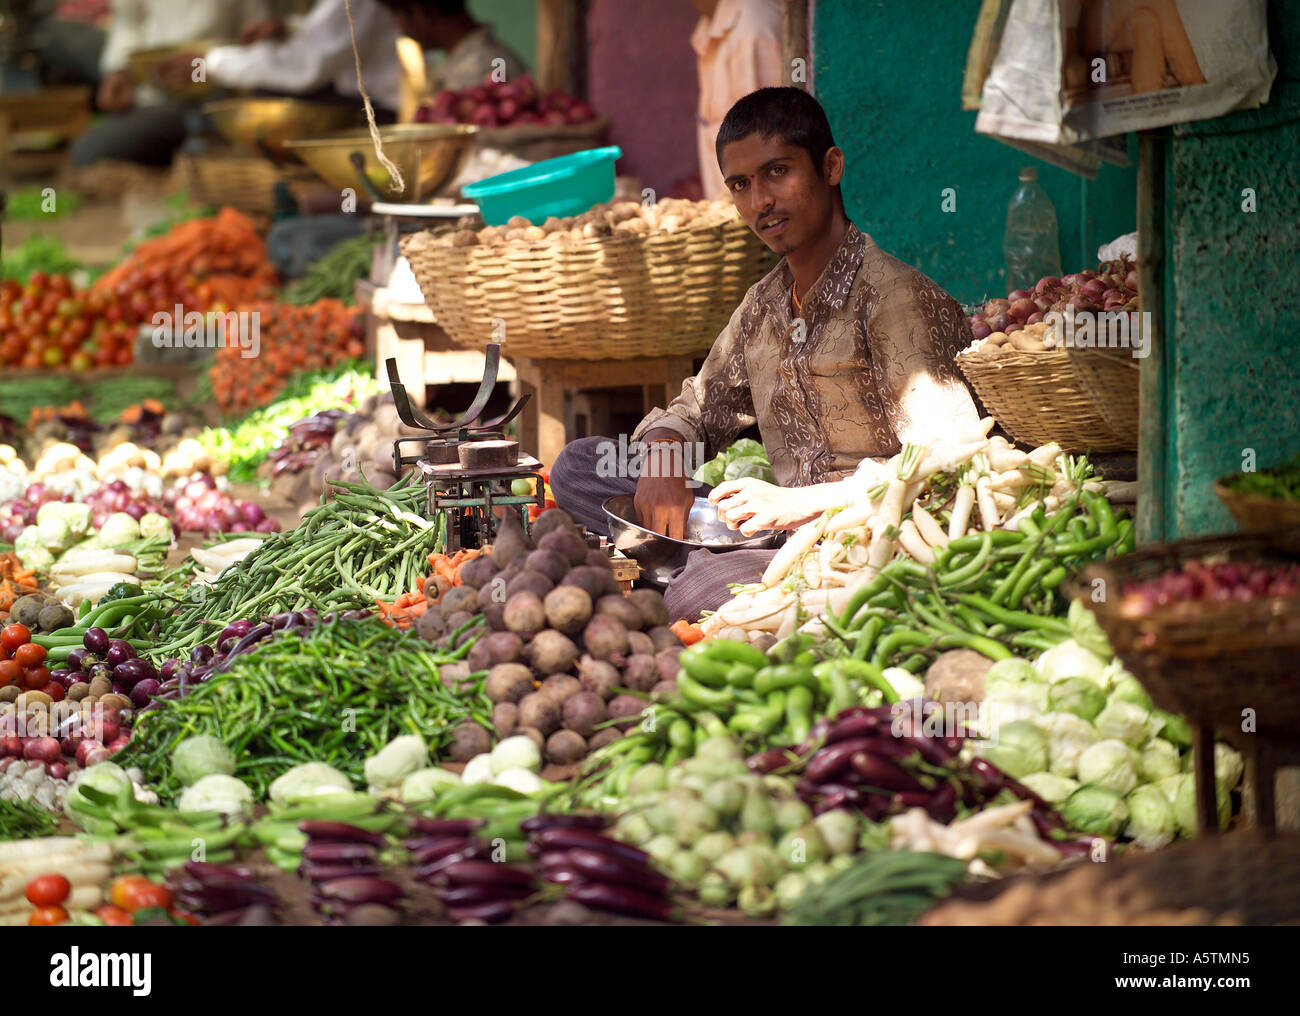 Jeune homme la vente de légumes, fruits et légumes du marché Devaraja, Mysore, Inde. Banque D'Images